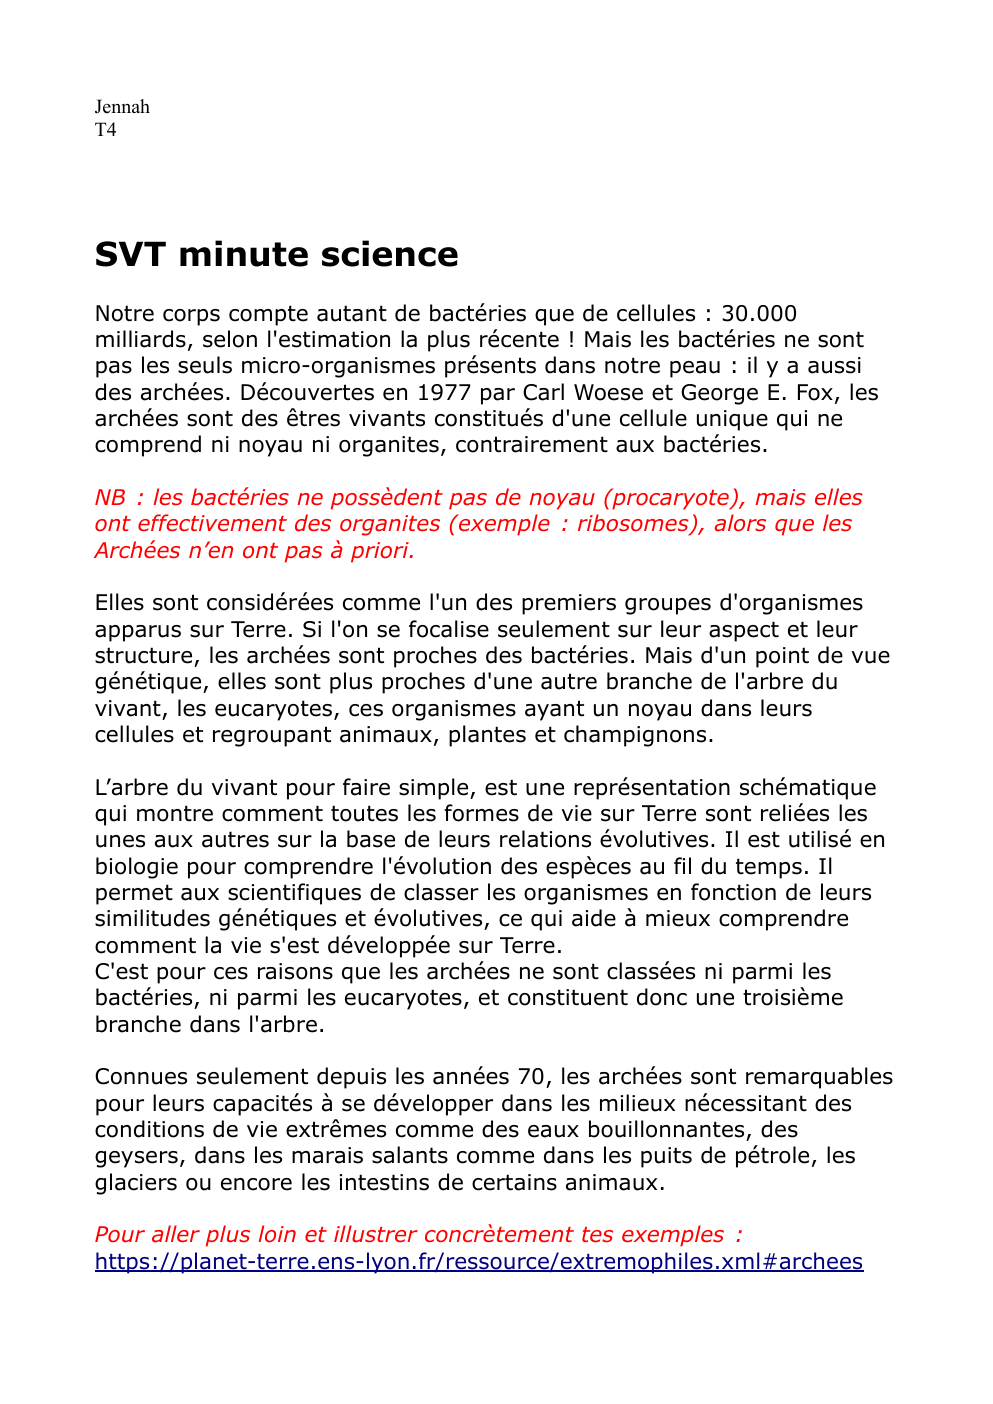 Prévisualisation du document SVT minute science